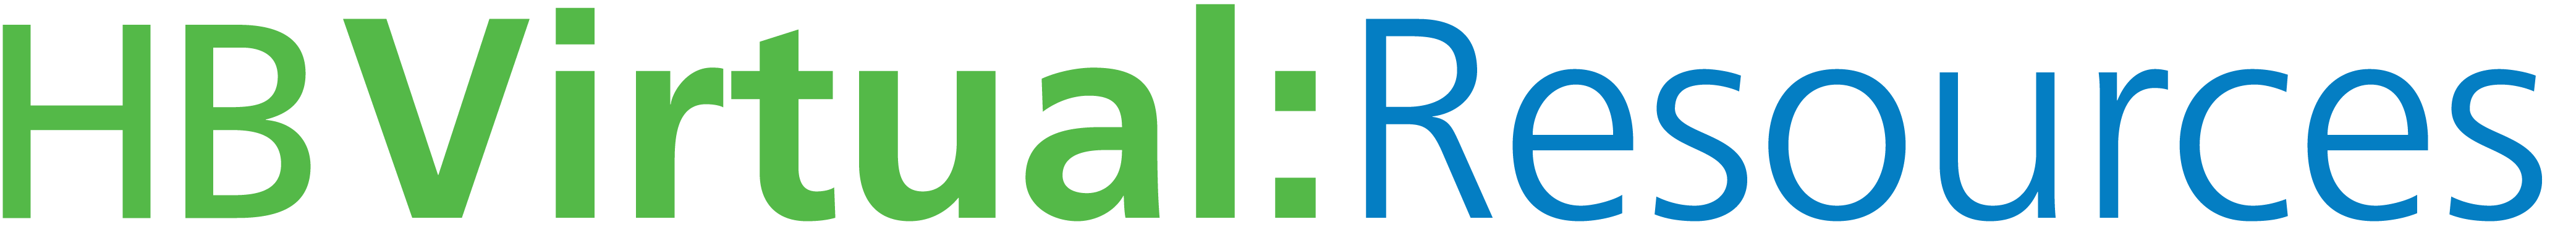 HB Virtual Resources logo